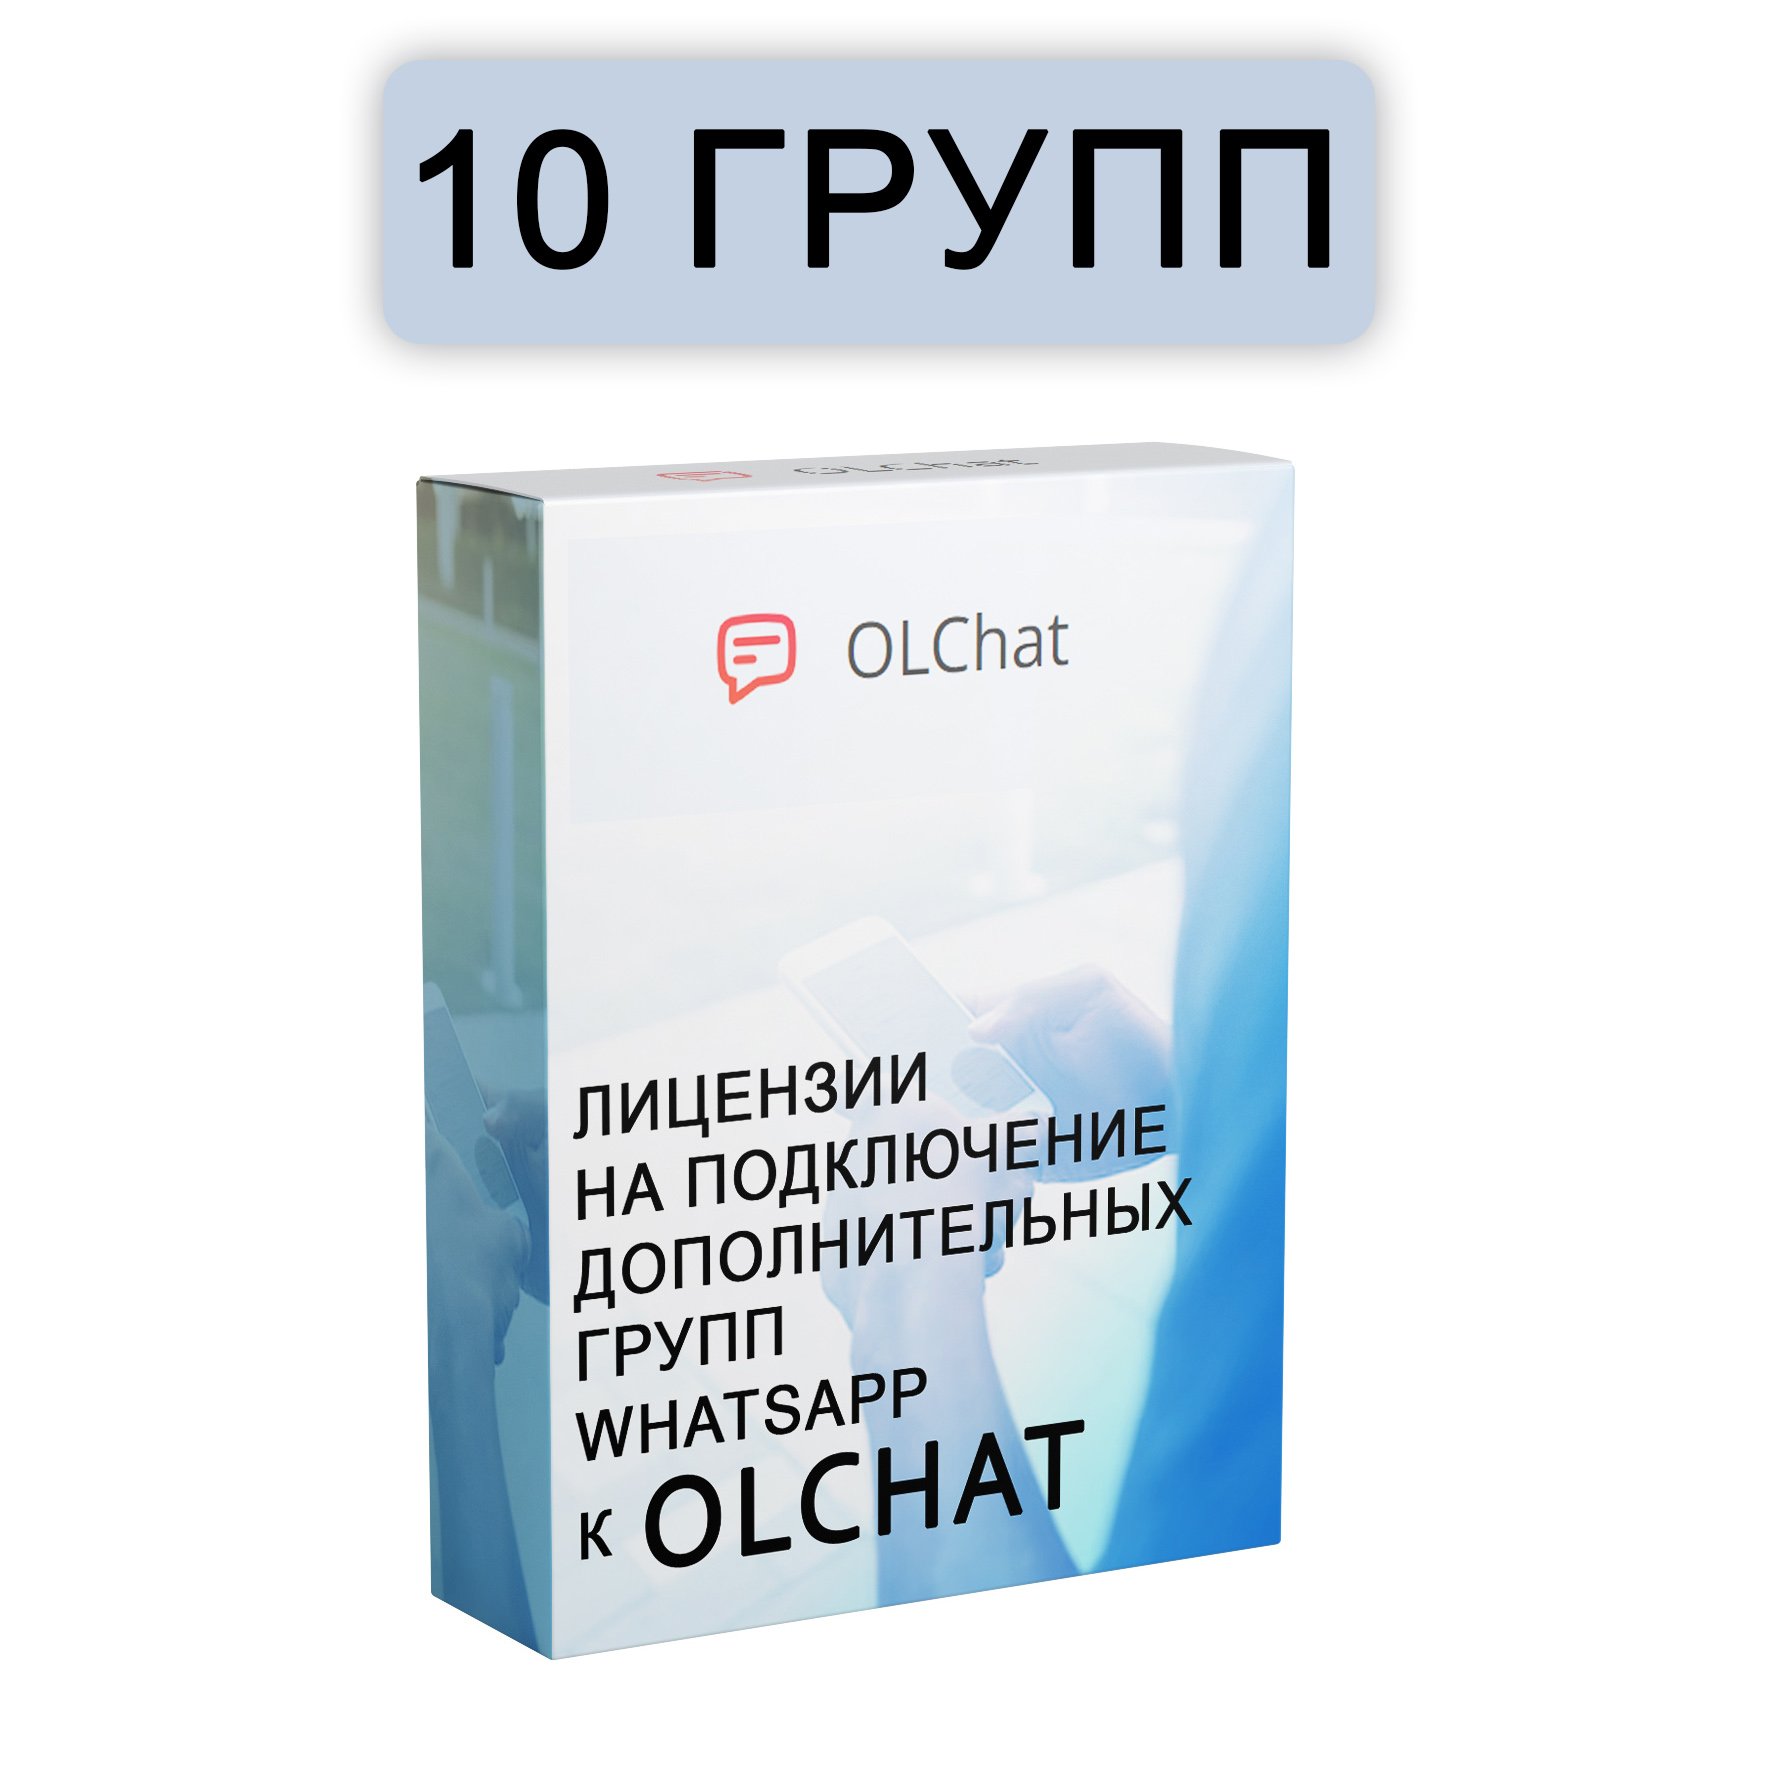 Подключение 10 групп WhatsApp к OLChat на 30 дней